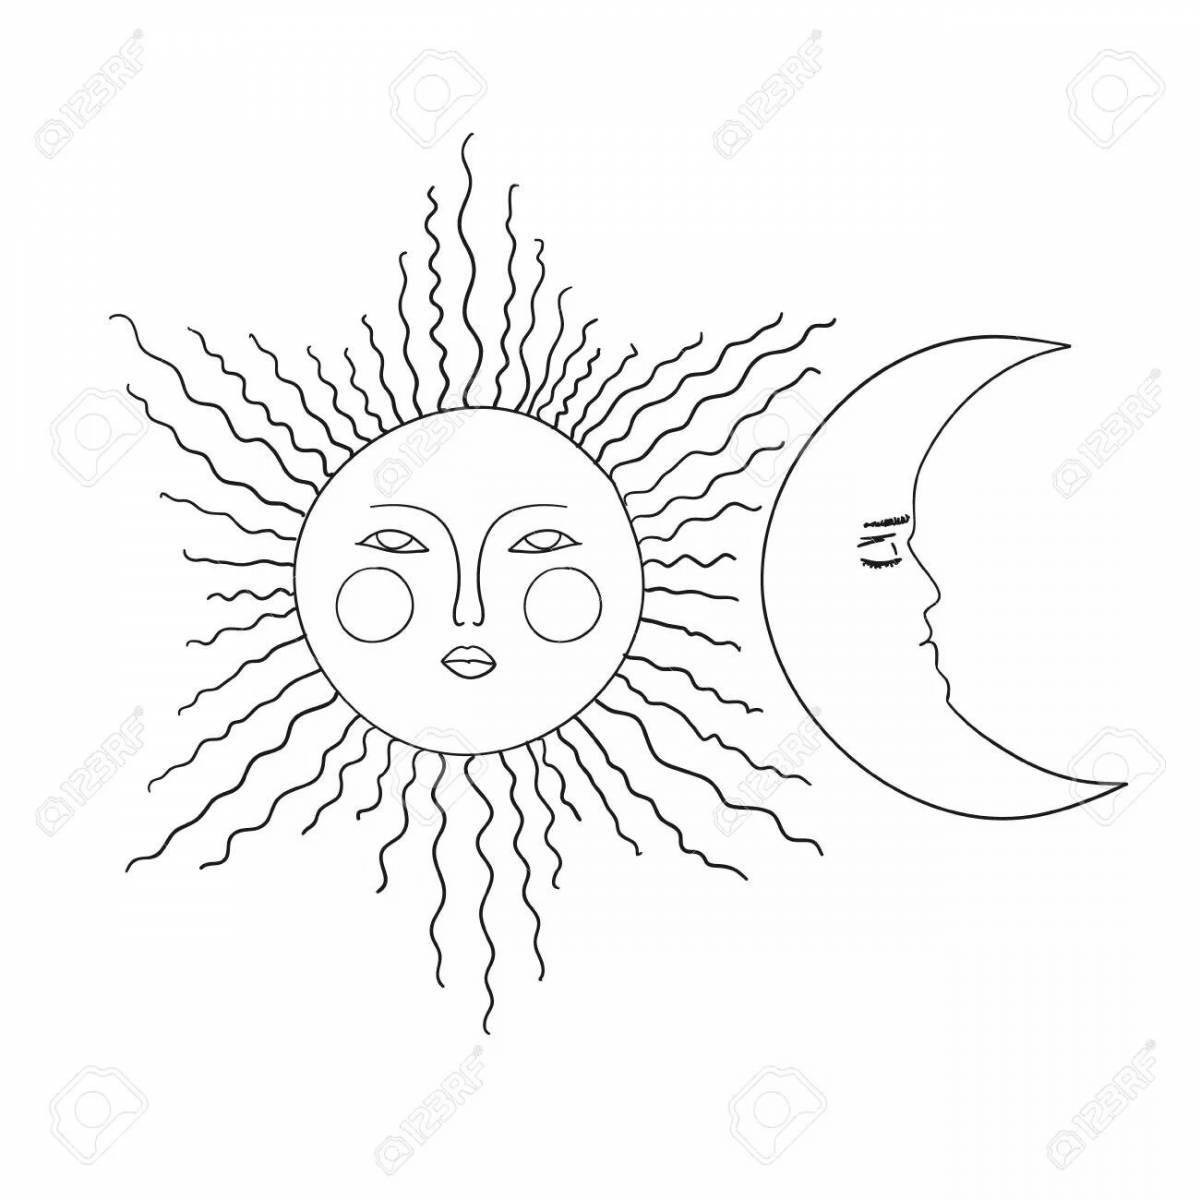 Увлекательная раскраска луна и солнце для детей